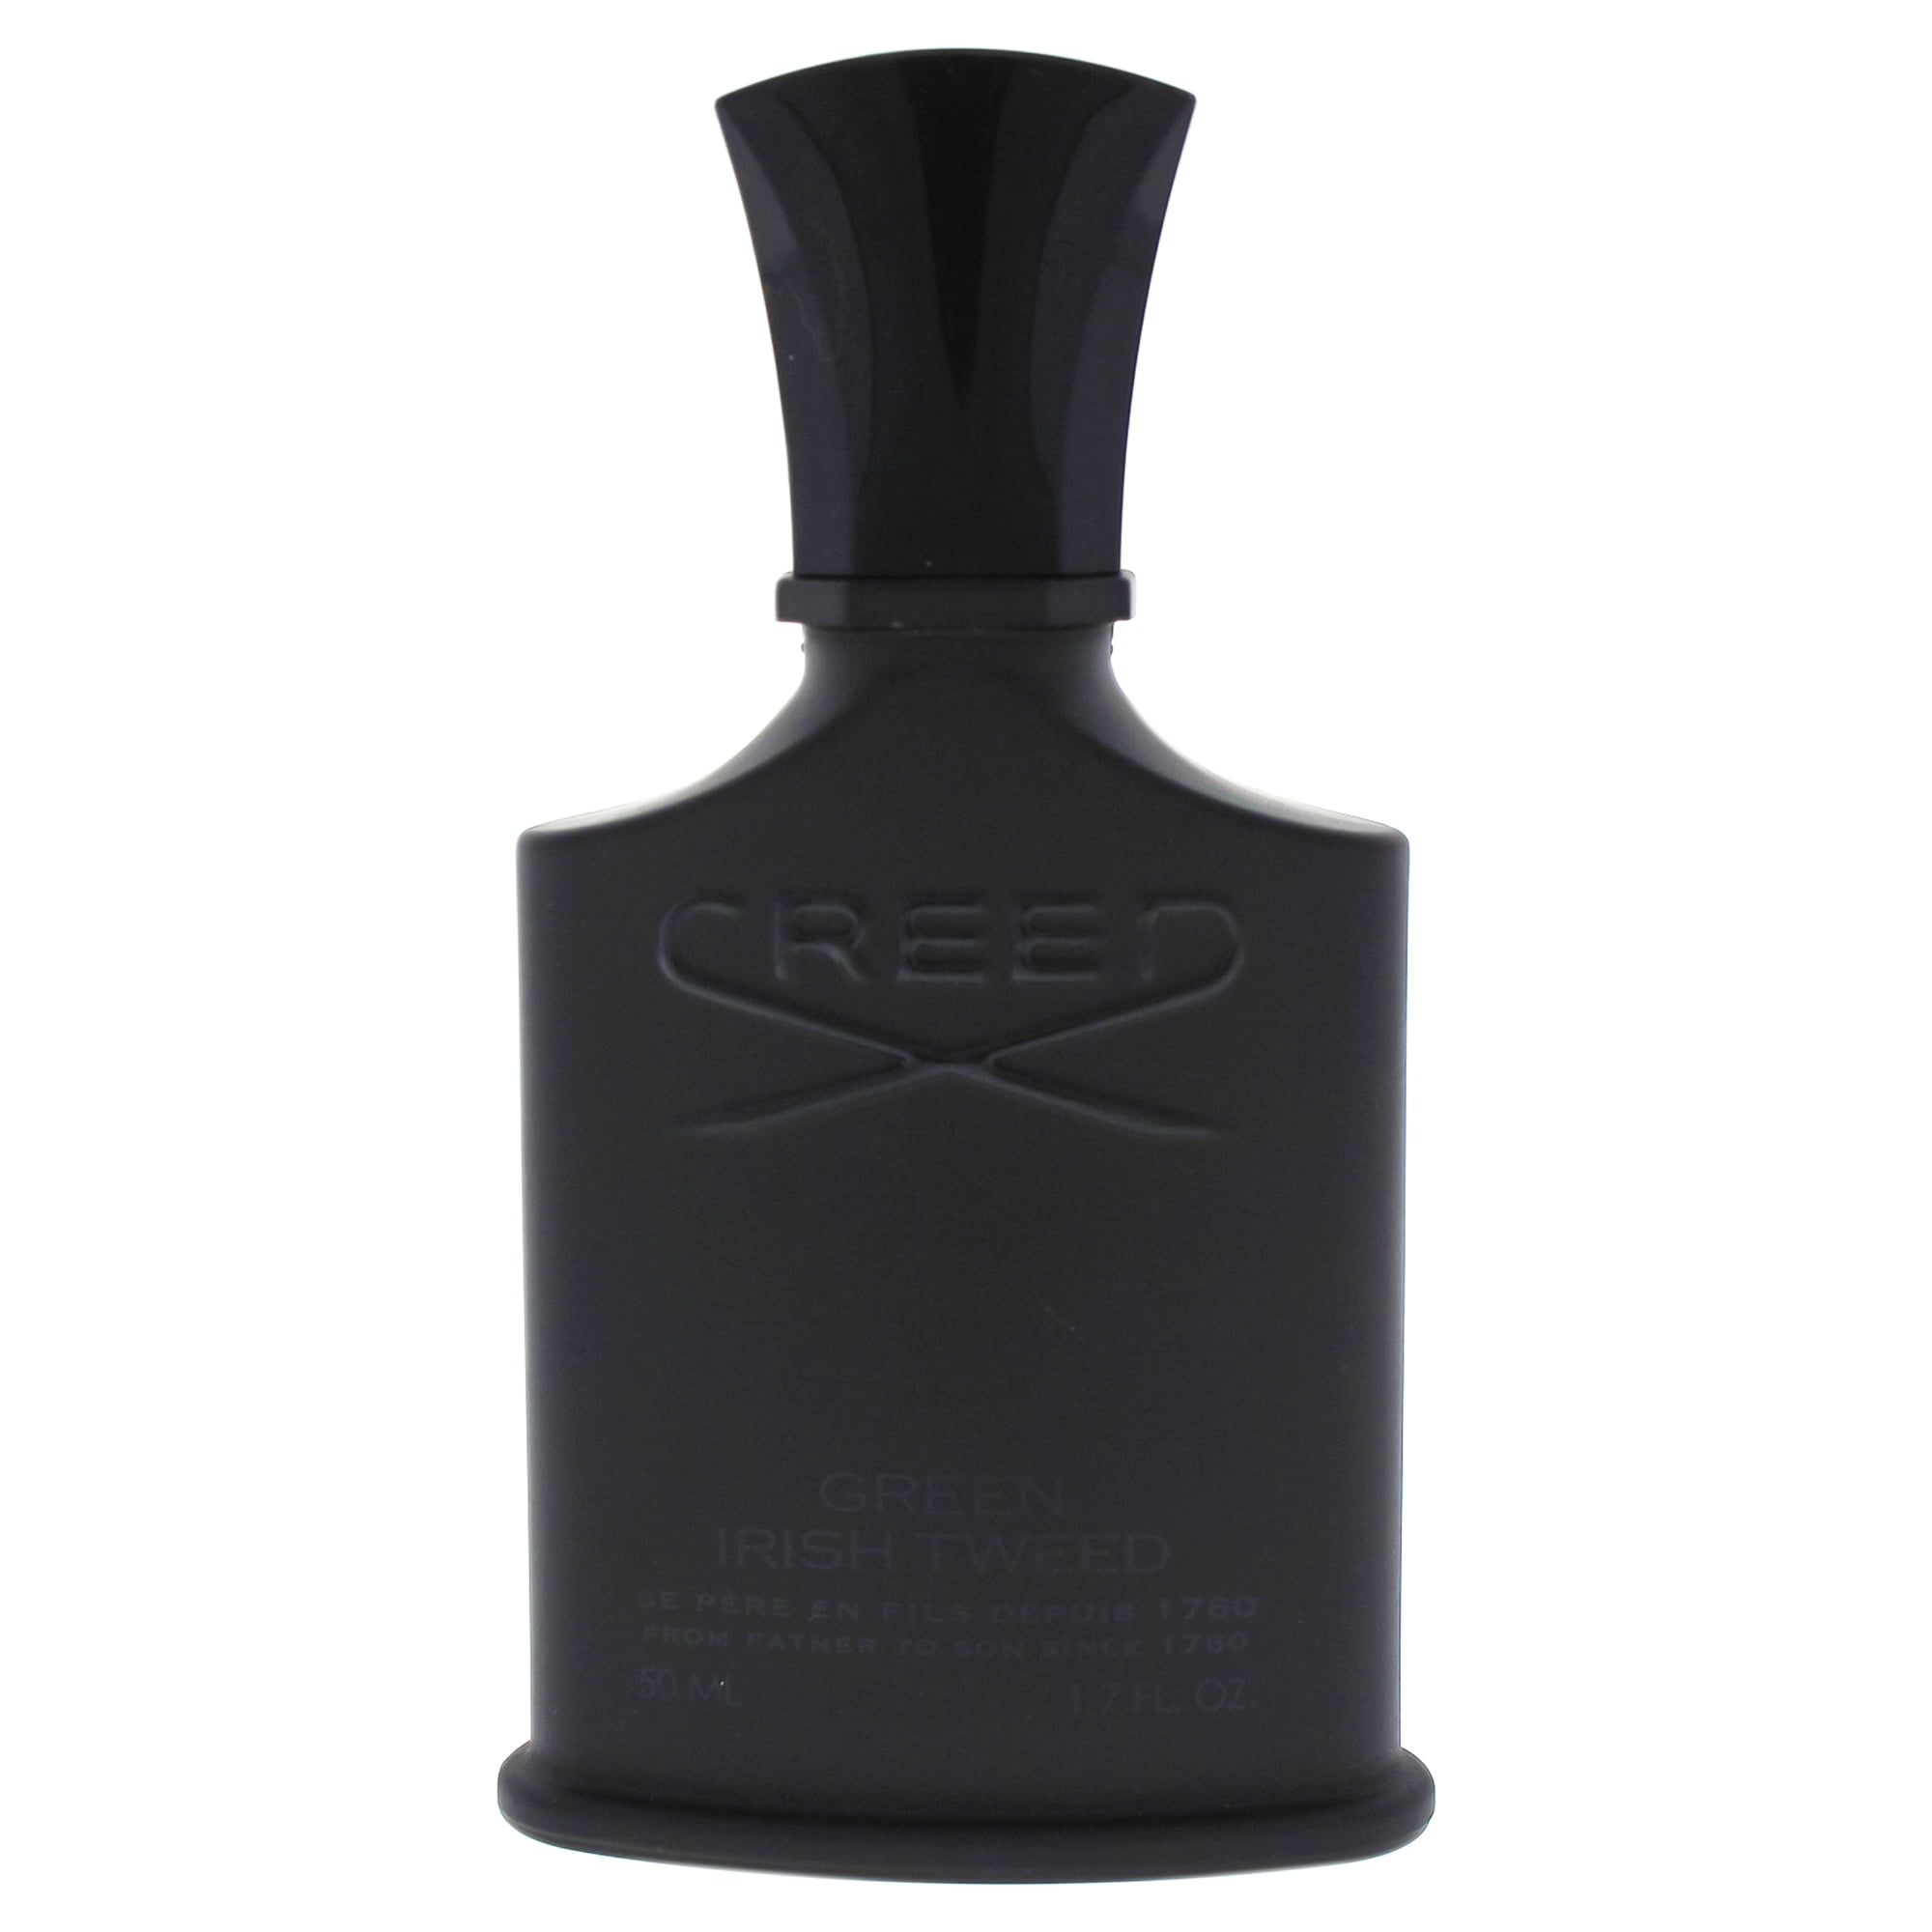 Creed - Creed Green Irish Tweed Eau De Parfum Spray, Cologne for Men, 1 ...